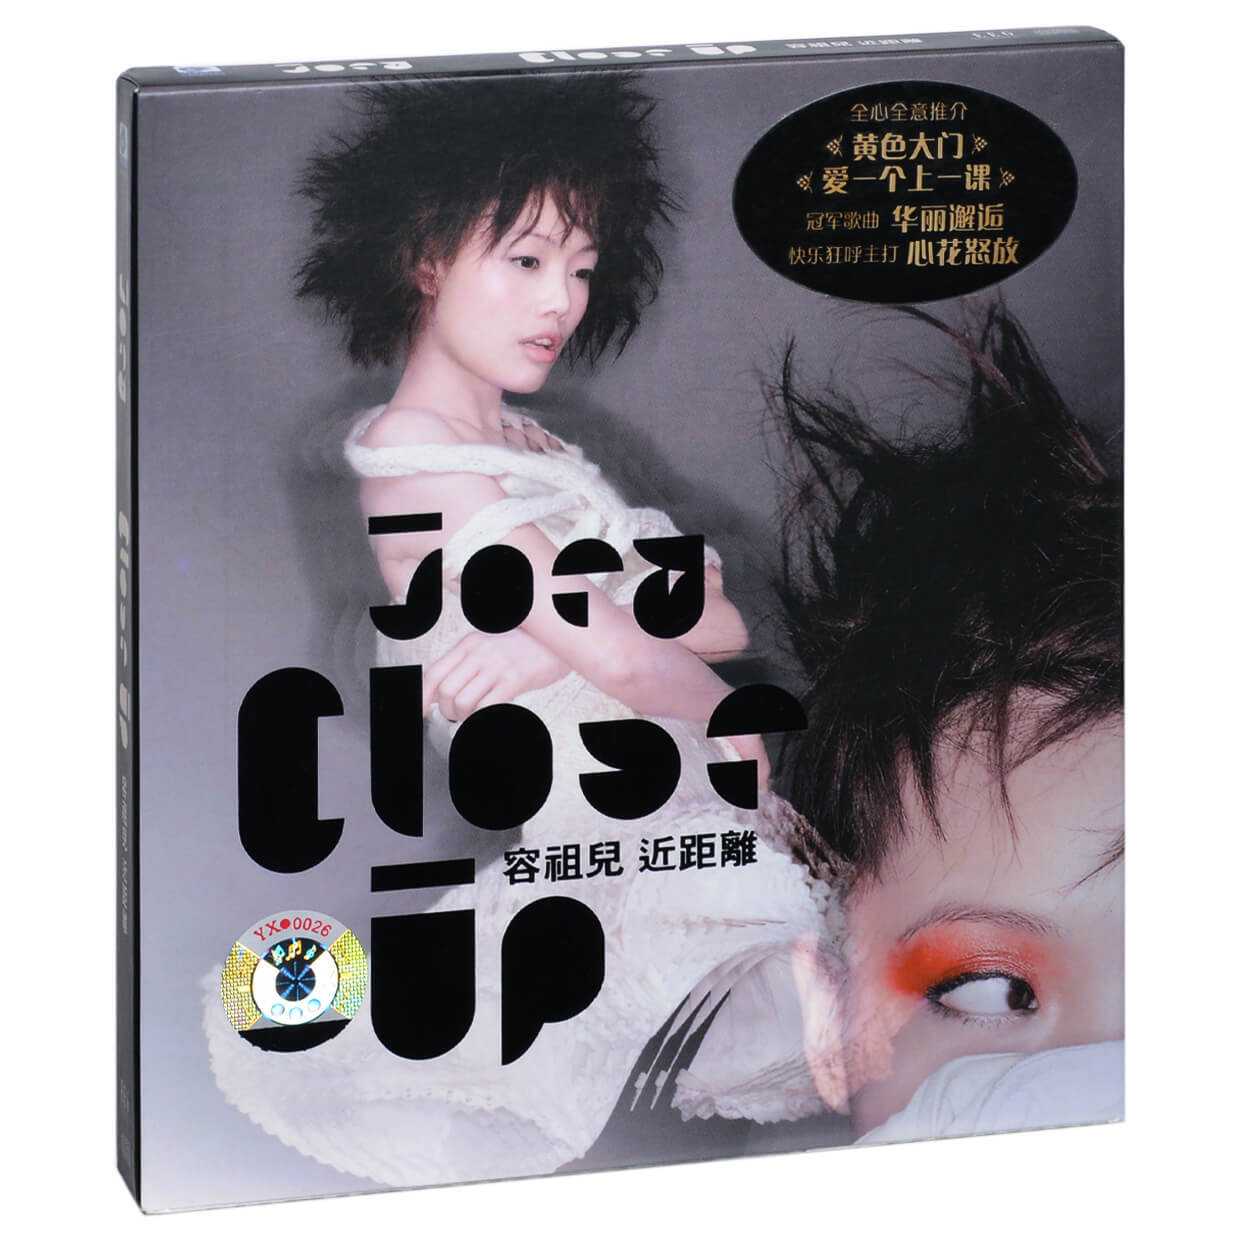 正版容祖儿 Close Up近距离 2006专辑英皇唱片CD碟片